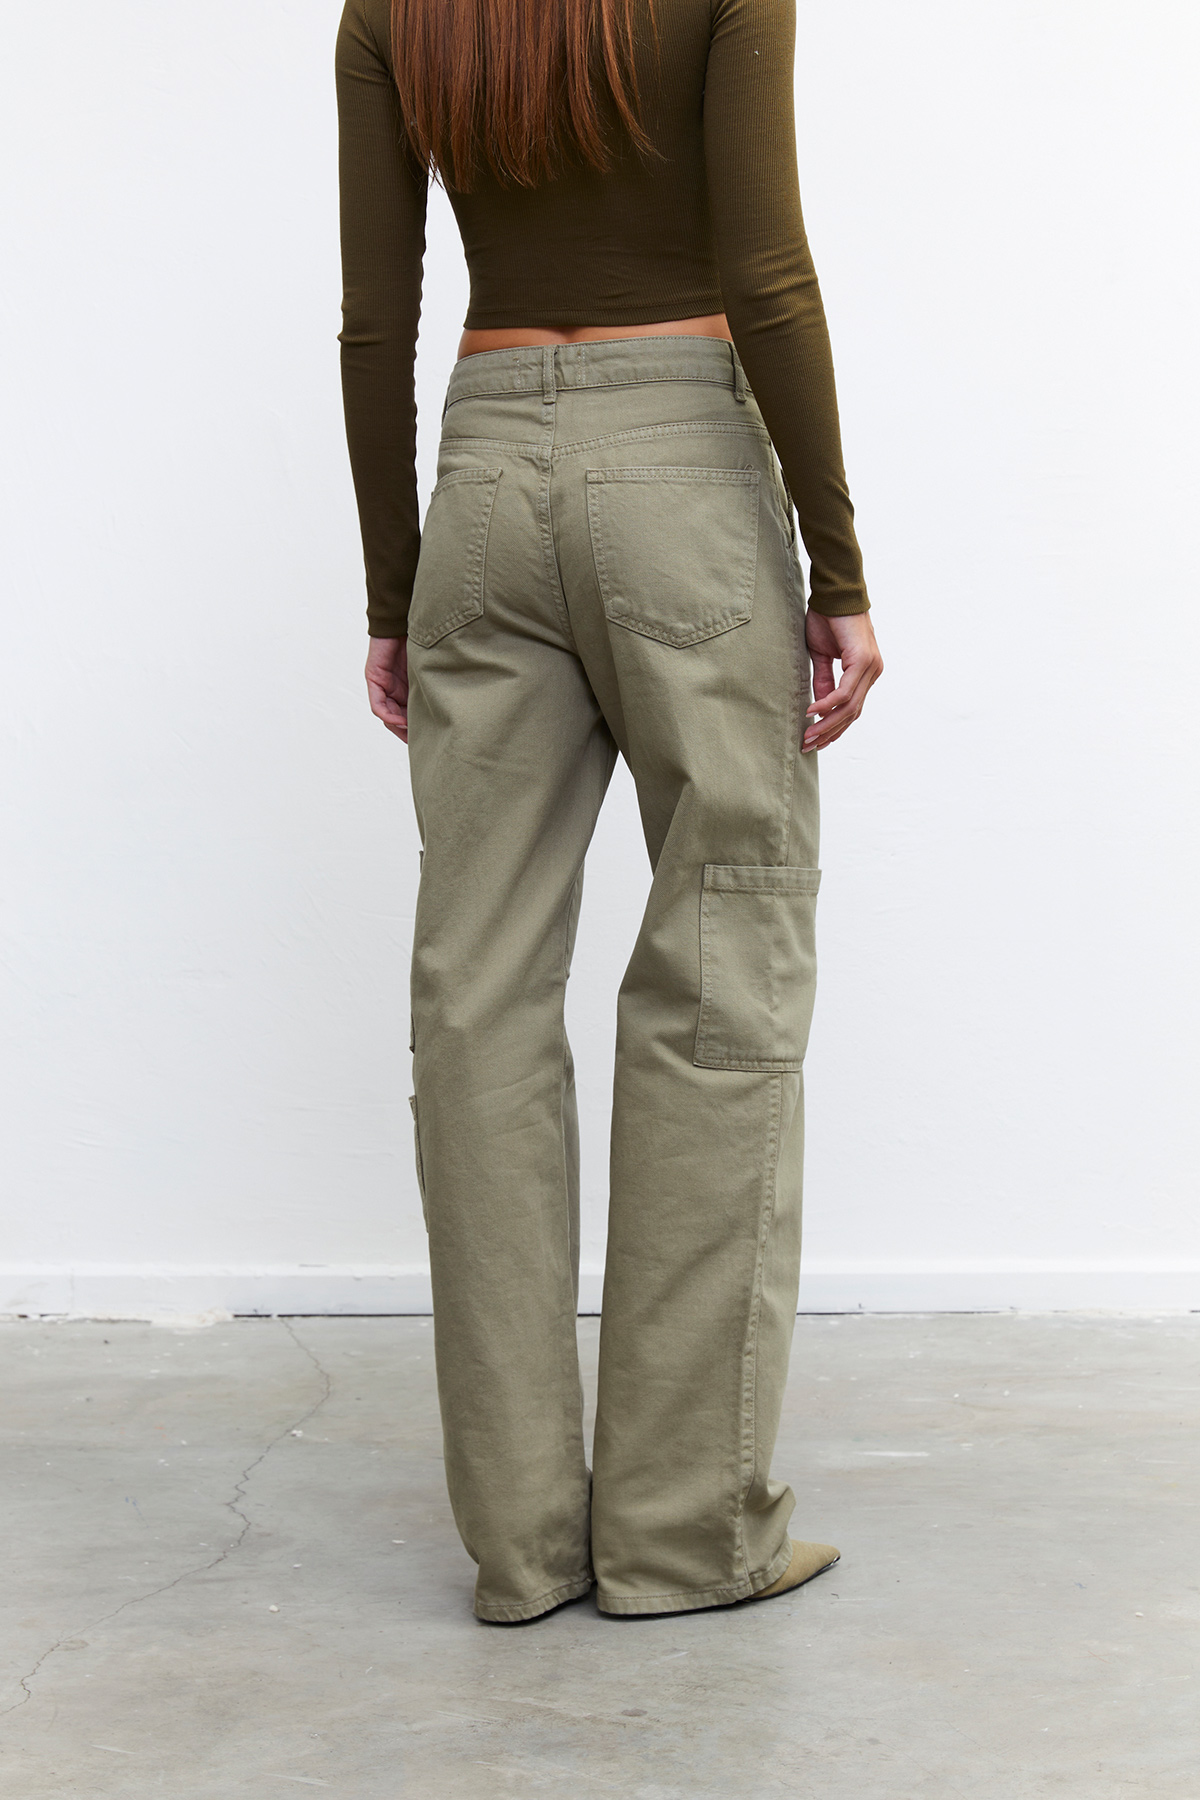 Vatkalı Kadın Straight Fit Kargo Pantolon - Limited Edition Haki